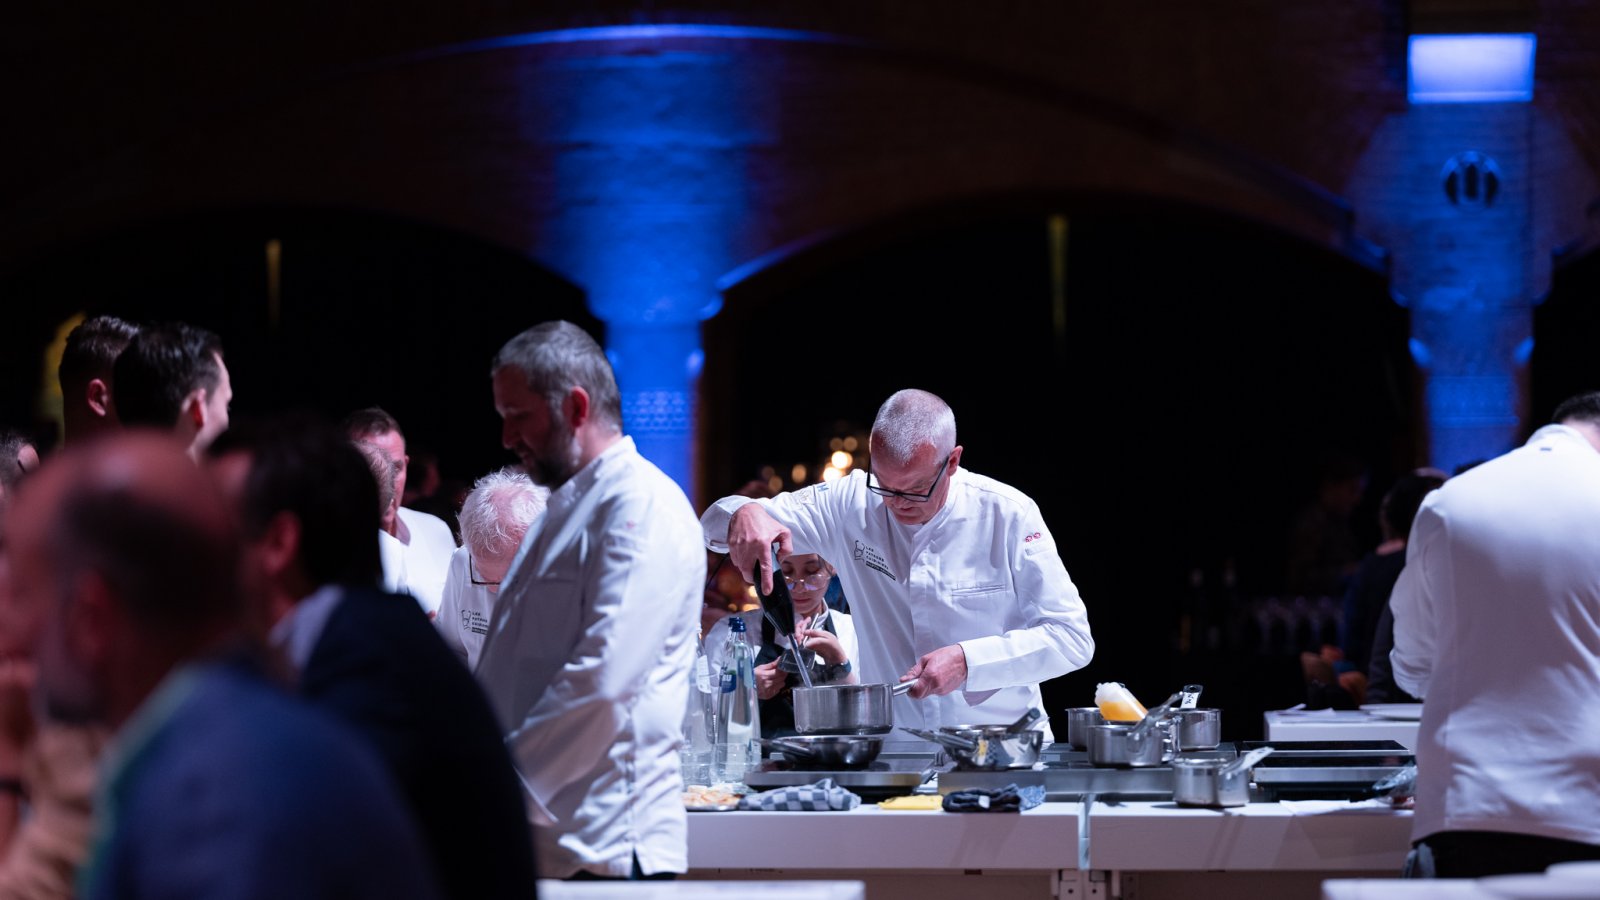 Chef's table tijdens het gala van Les Patrons Cuisiniers